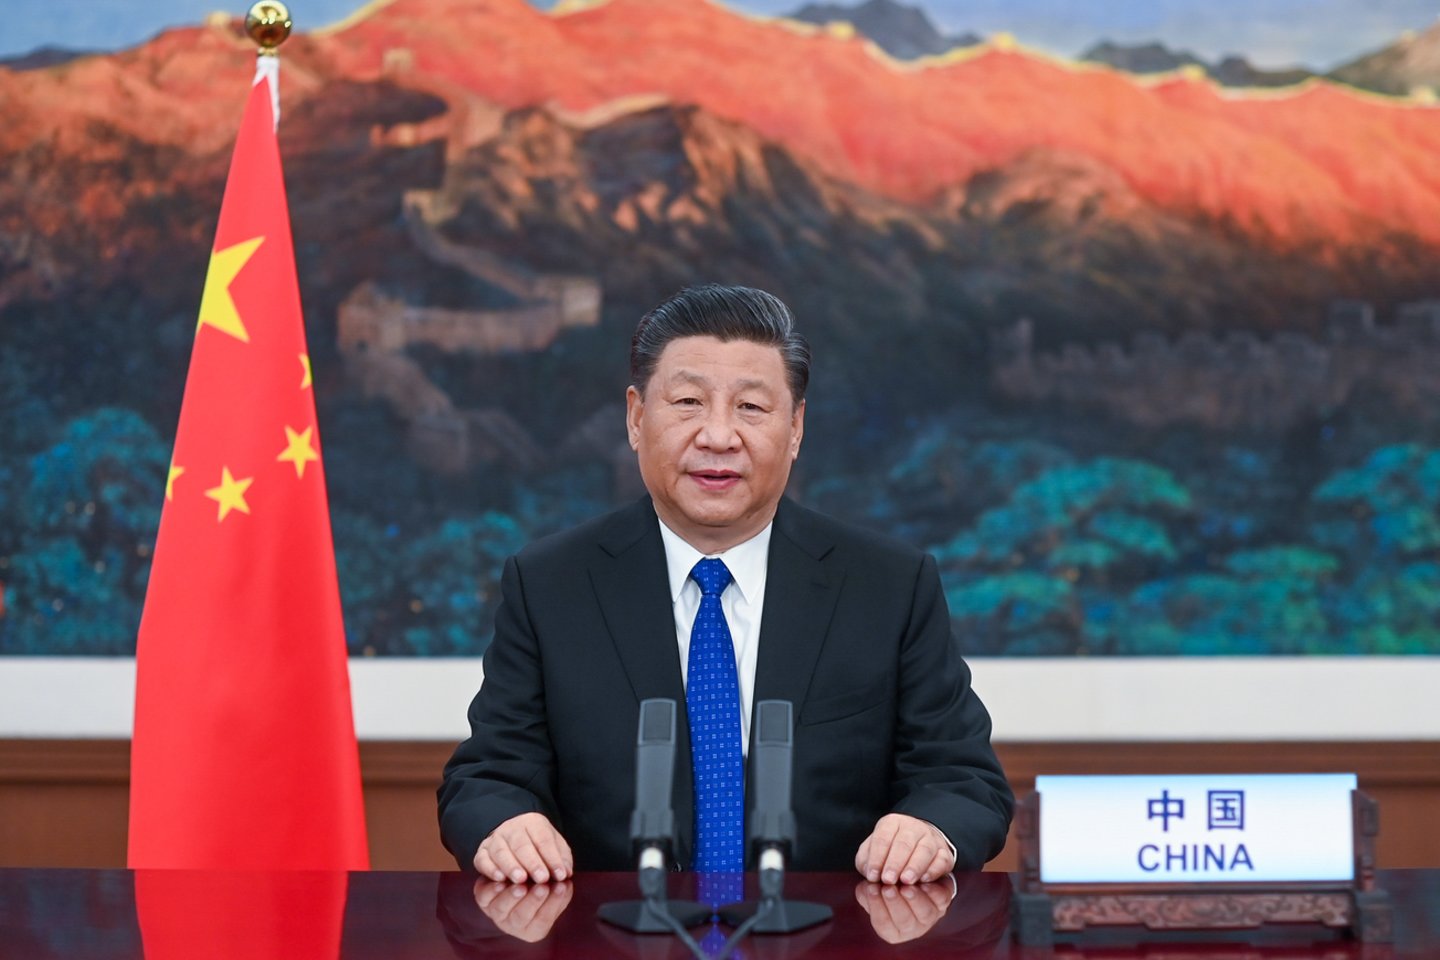  PSO susitikime Xi Jinpingas teigė, kad per ateinančius dvejus metus organizacijai paaukos 2 mlrd. dolerių, kad galėtų padėti besivystančioms ekonomikoms.<br> Zumapress/Scanpix nuotr.